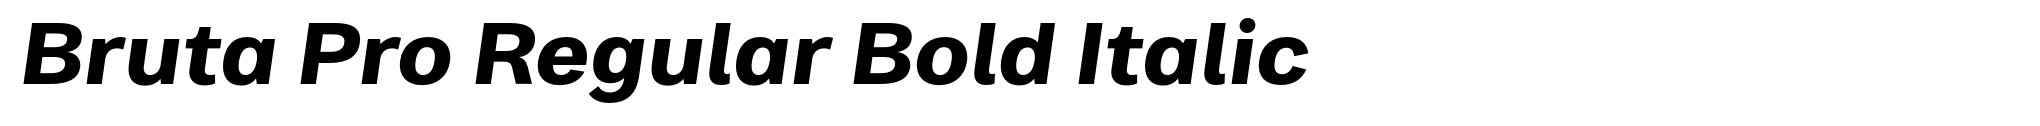 Bruta Pro Regular Bold Italic image